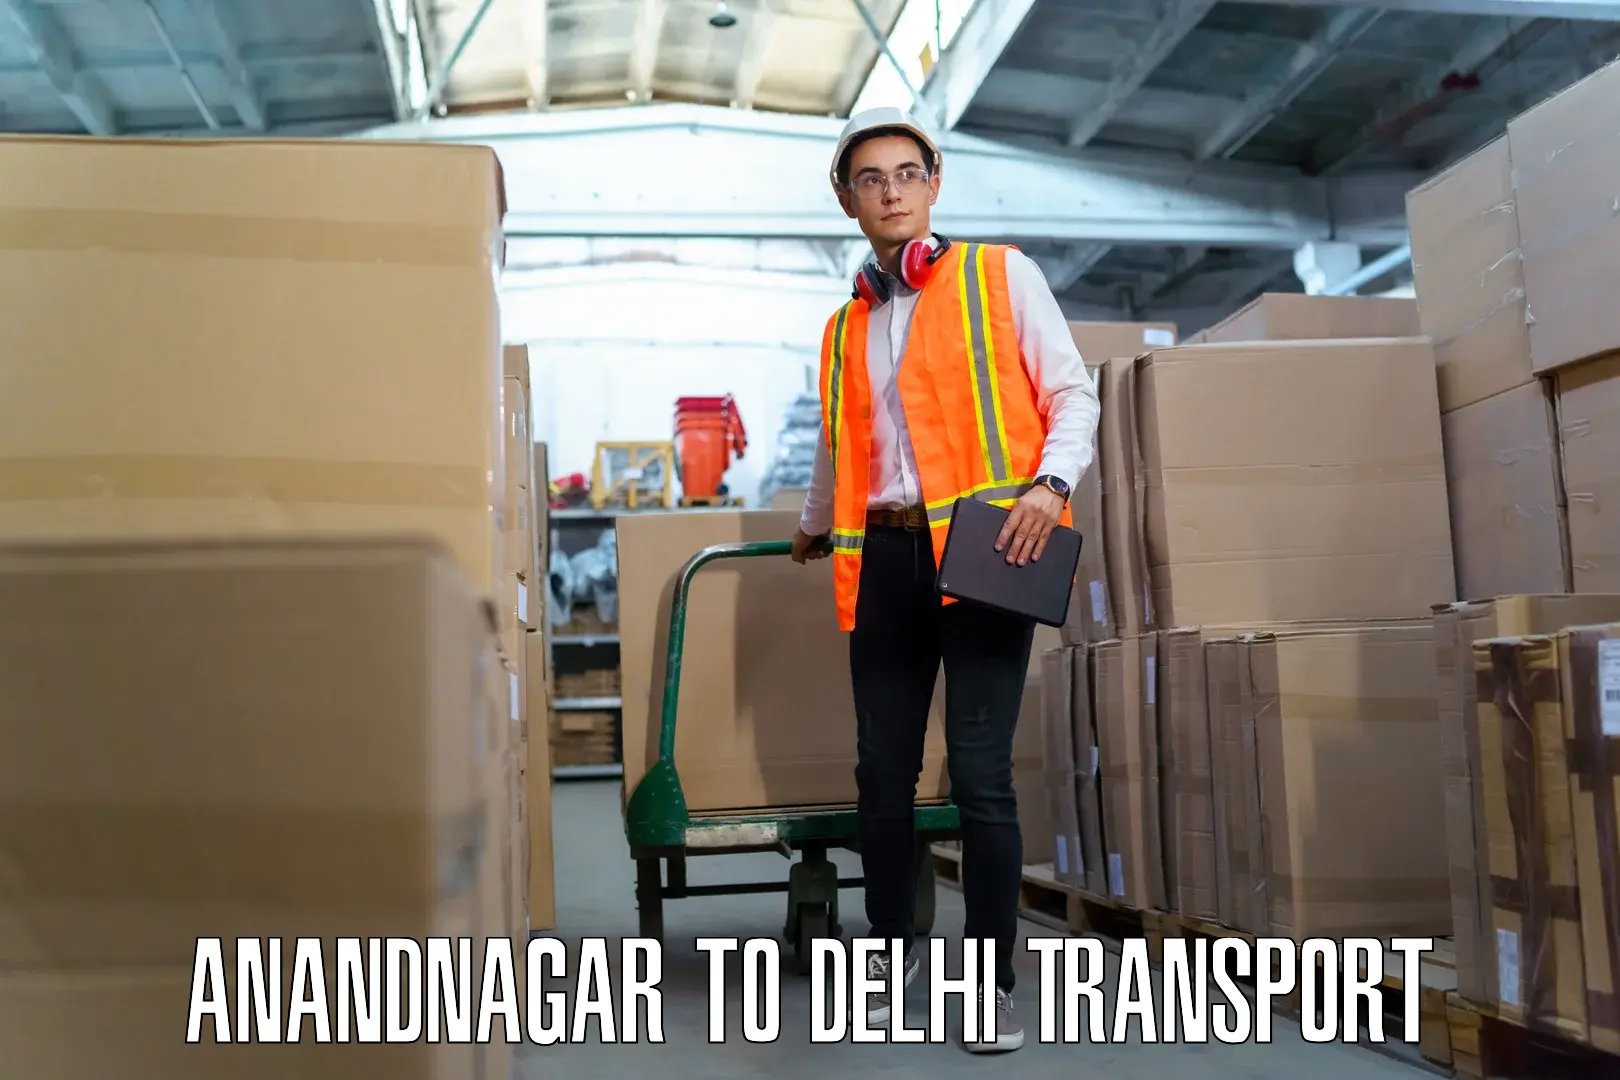 Nationwide transport services Anandnagar to IIT Delhi